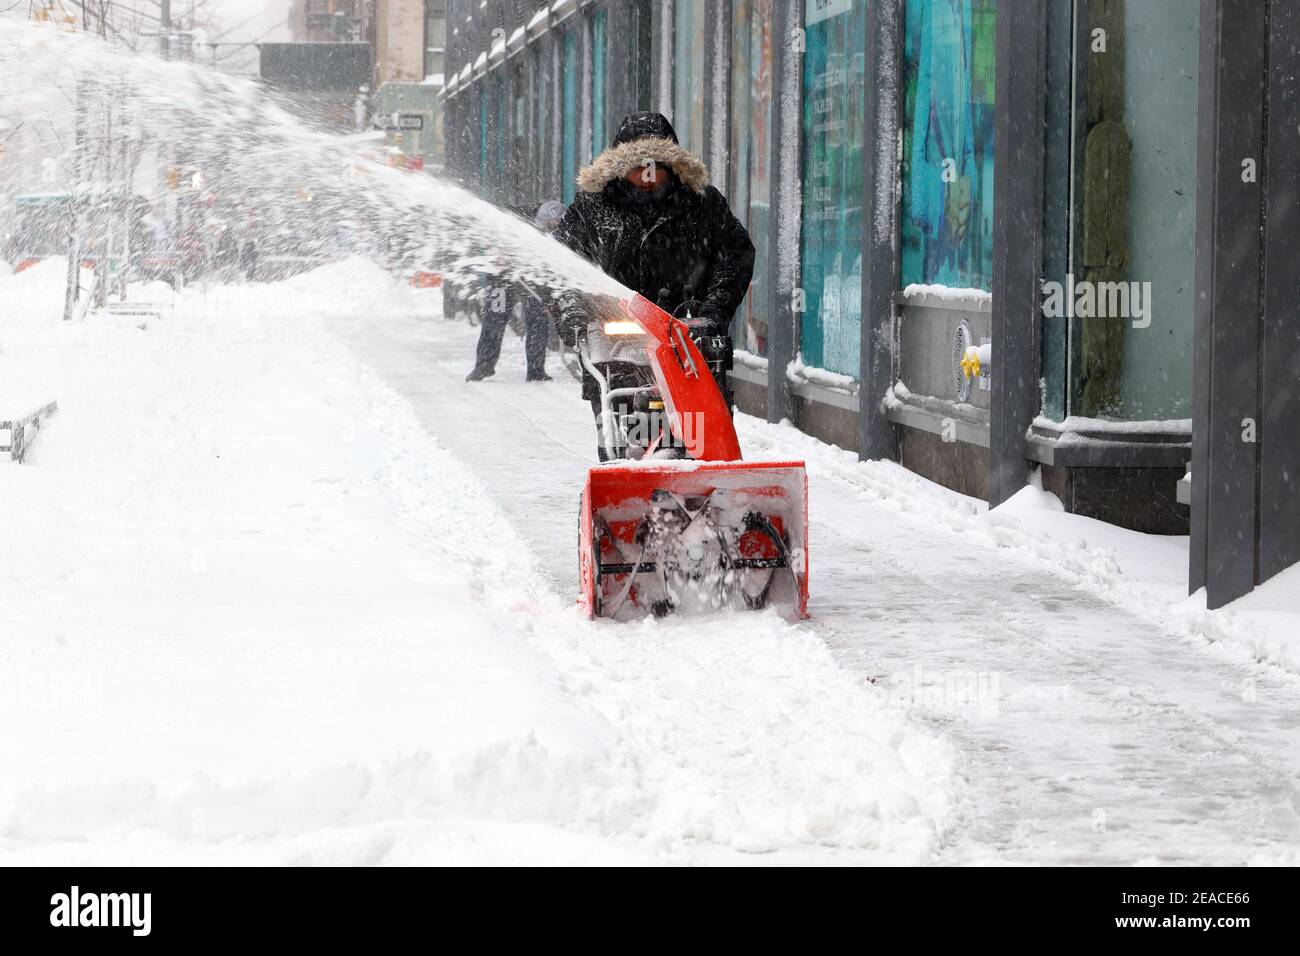 Une personne utilise un souffleur de neige pour déneiger un trottoir après une tempête de neige hivernale à New York, NY. Banque D'Images